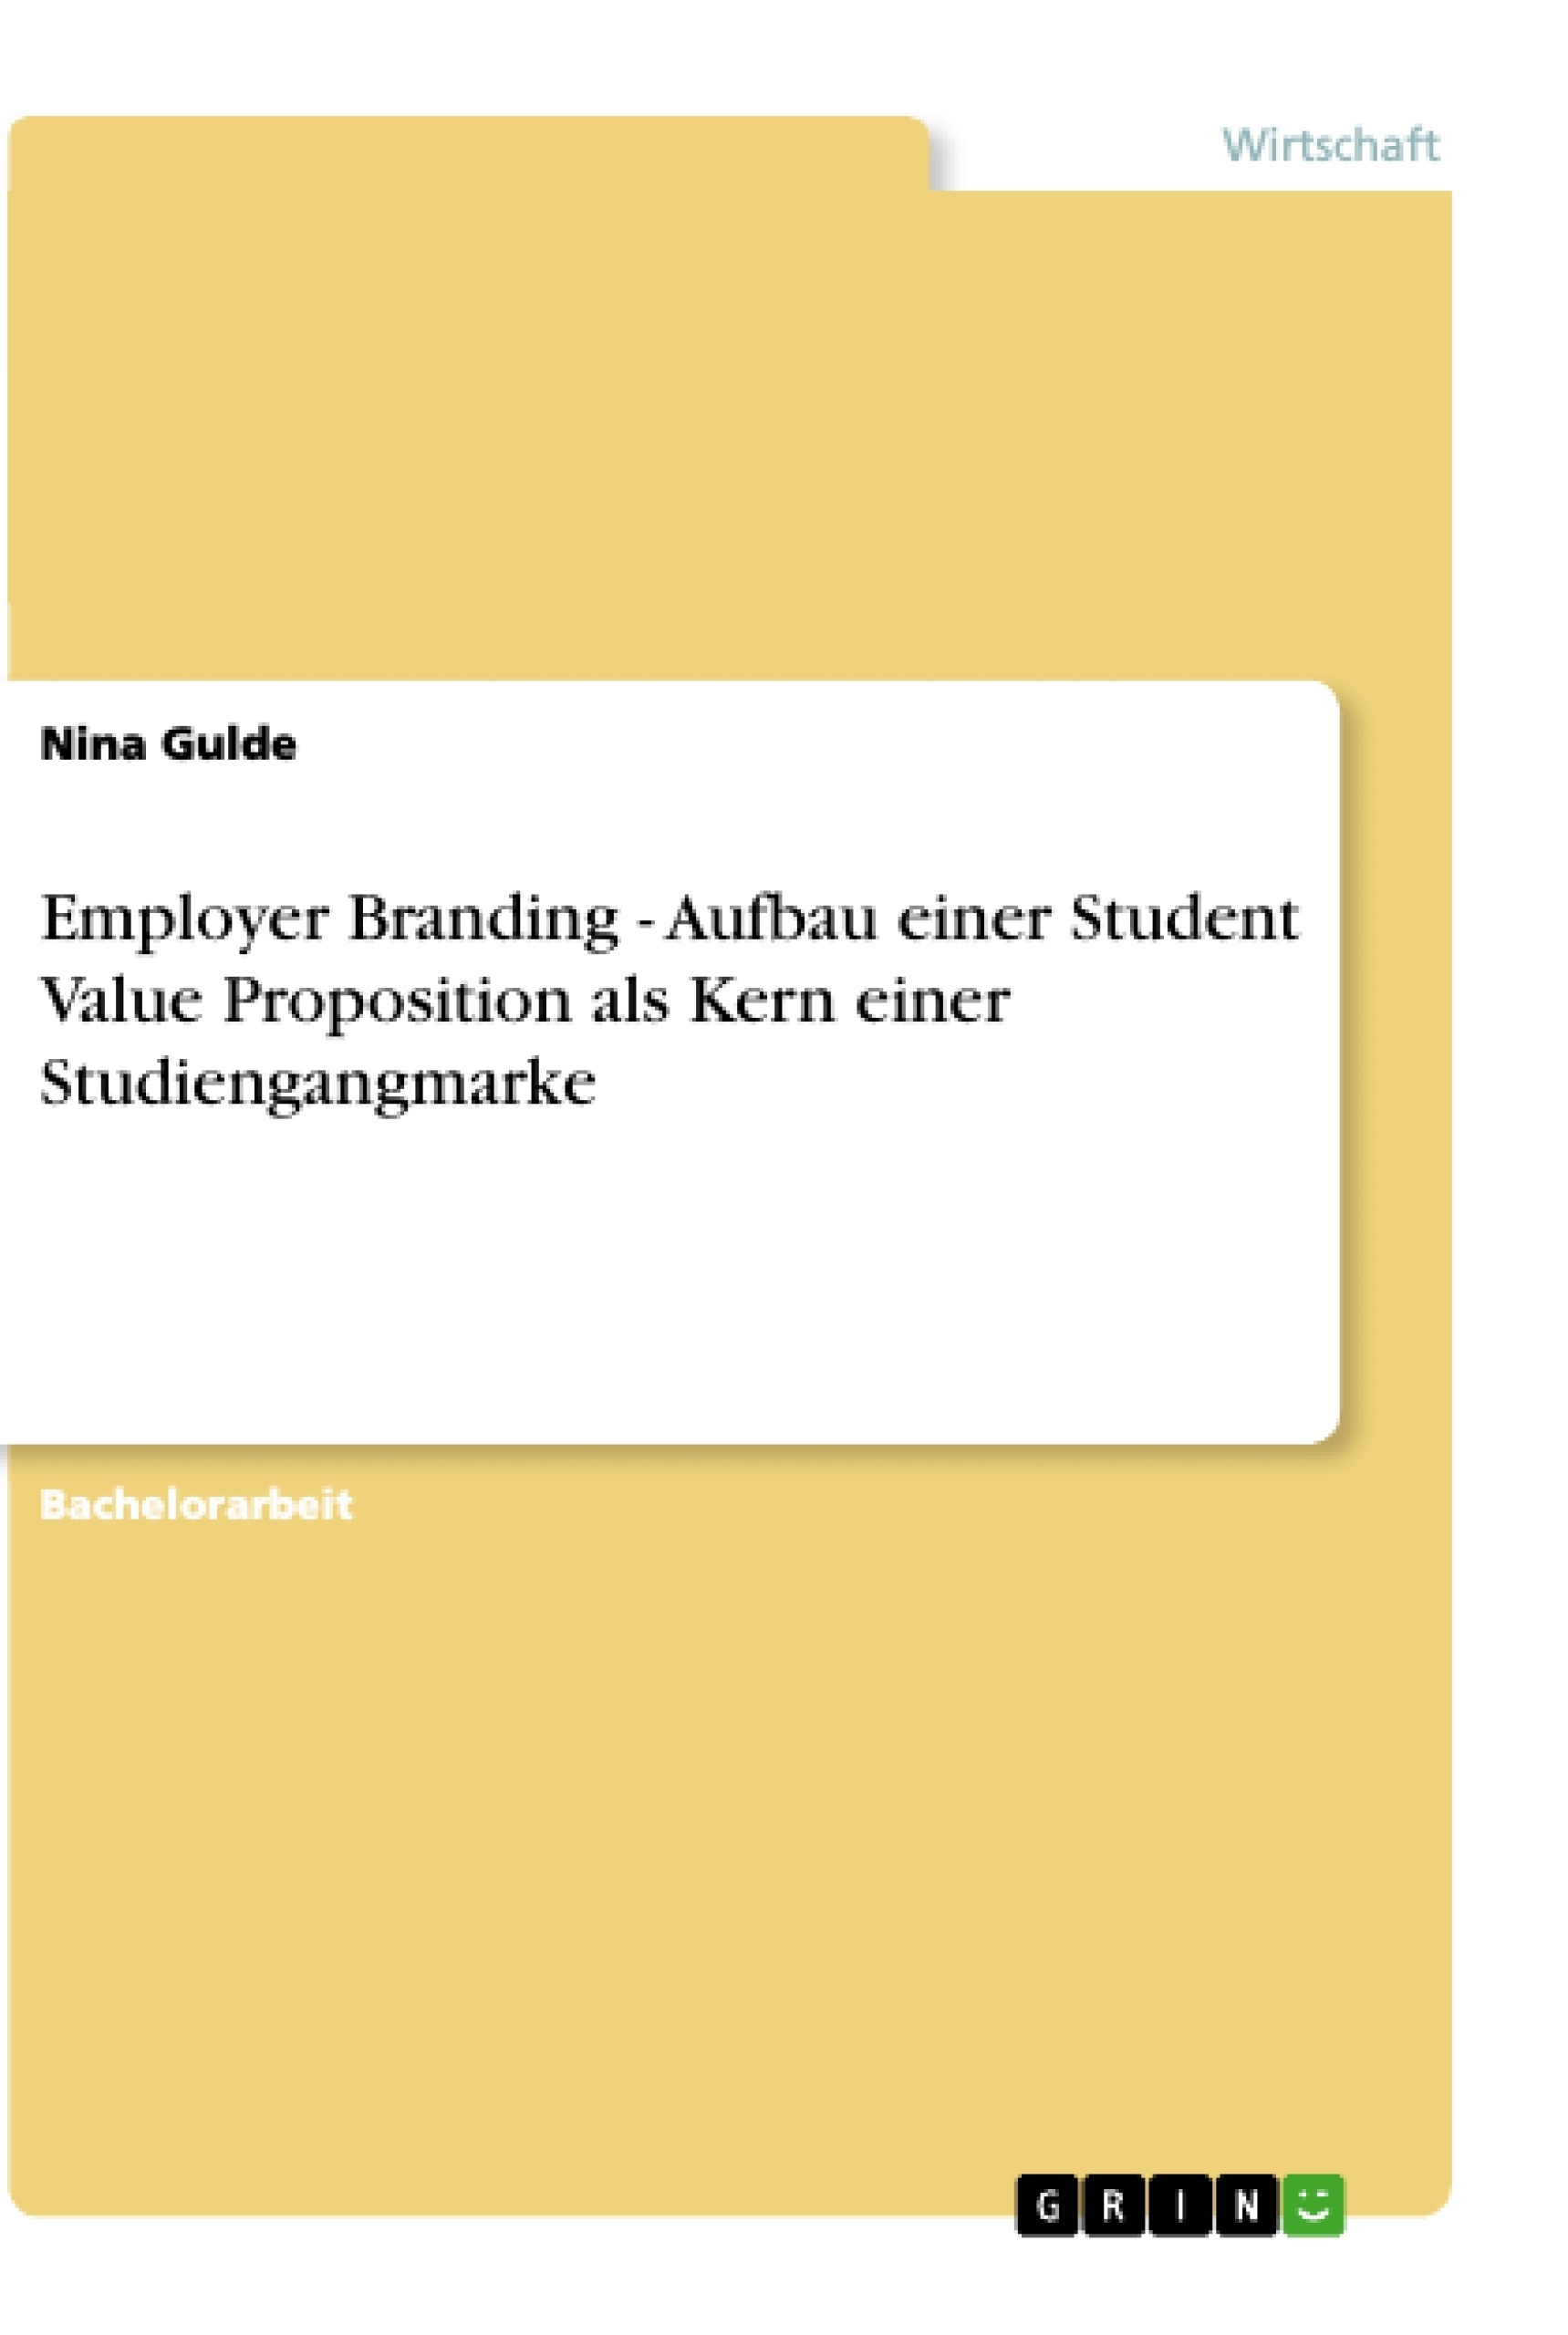 Title: Employer Branding - Aufbau einer Student Value Proposition als Kern einer Studiengangmarke